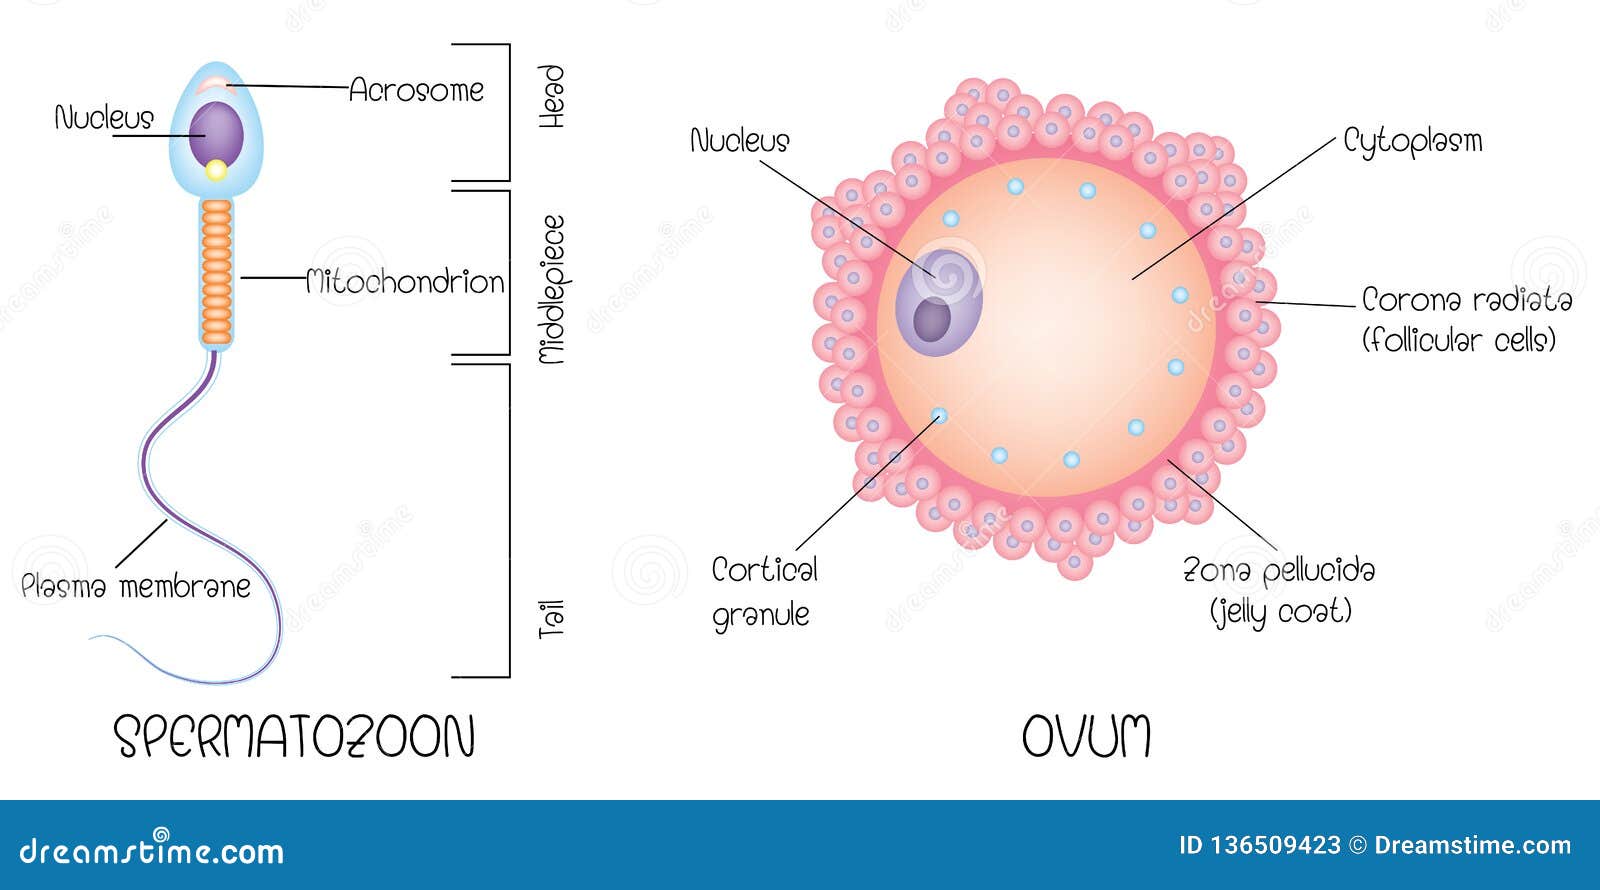 egg cell diagram